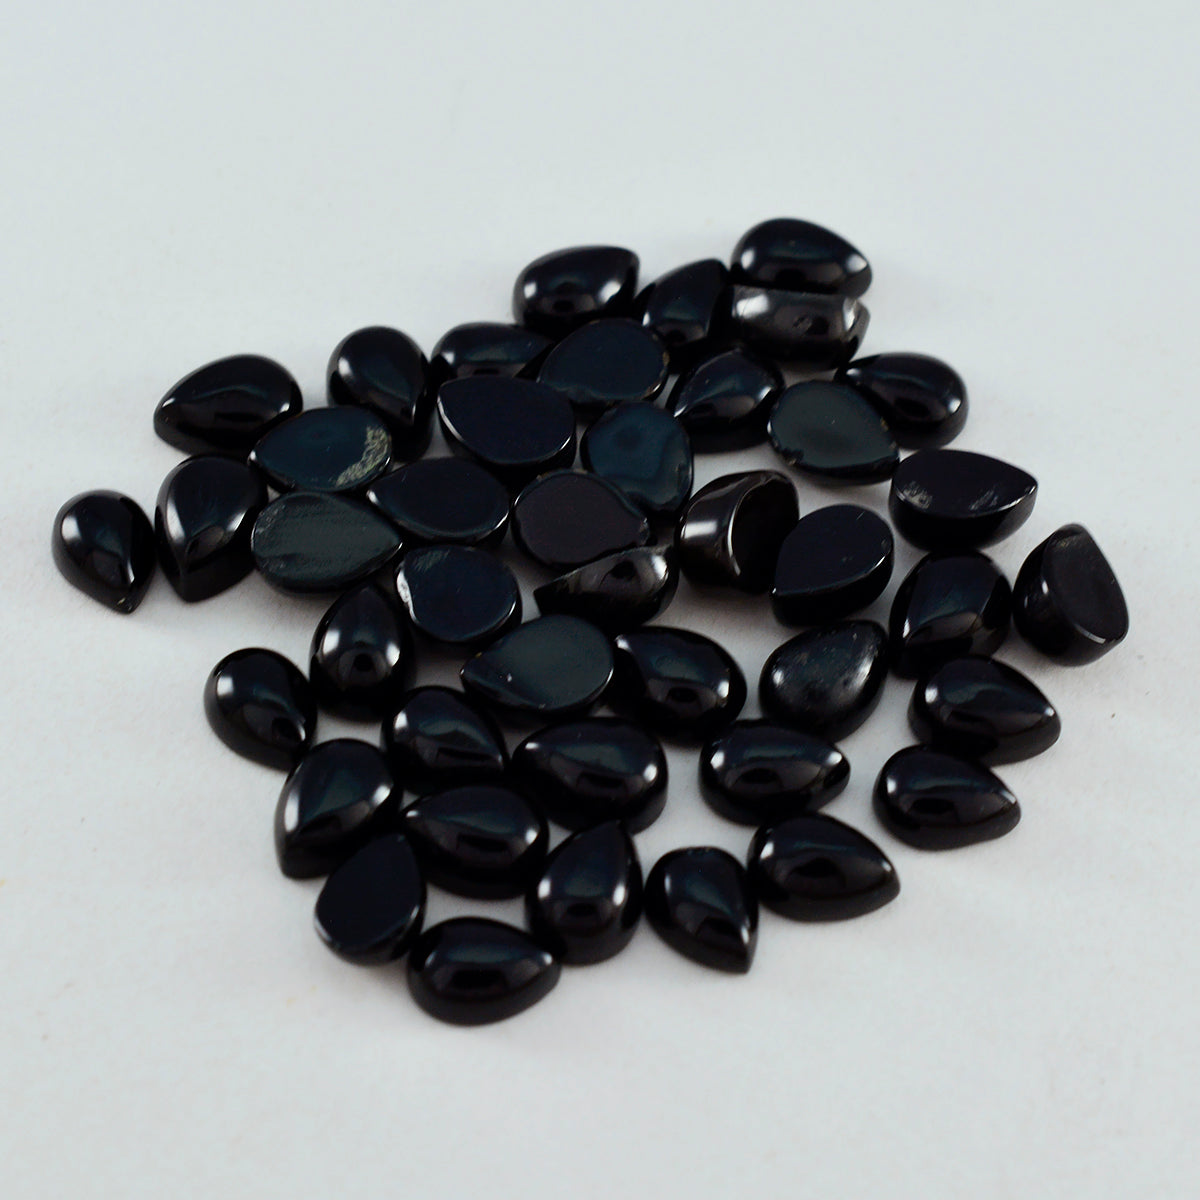 Riyogems 1 pc cabochon onyx noir 4x6 mm forme de poire superbe qualité pierres précieuses en vrac